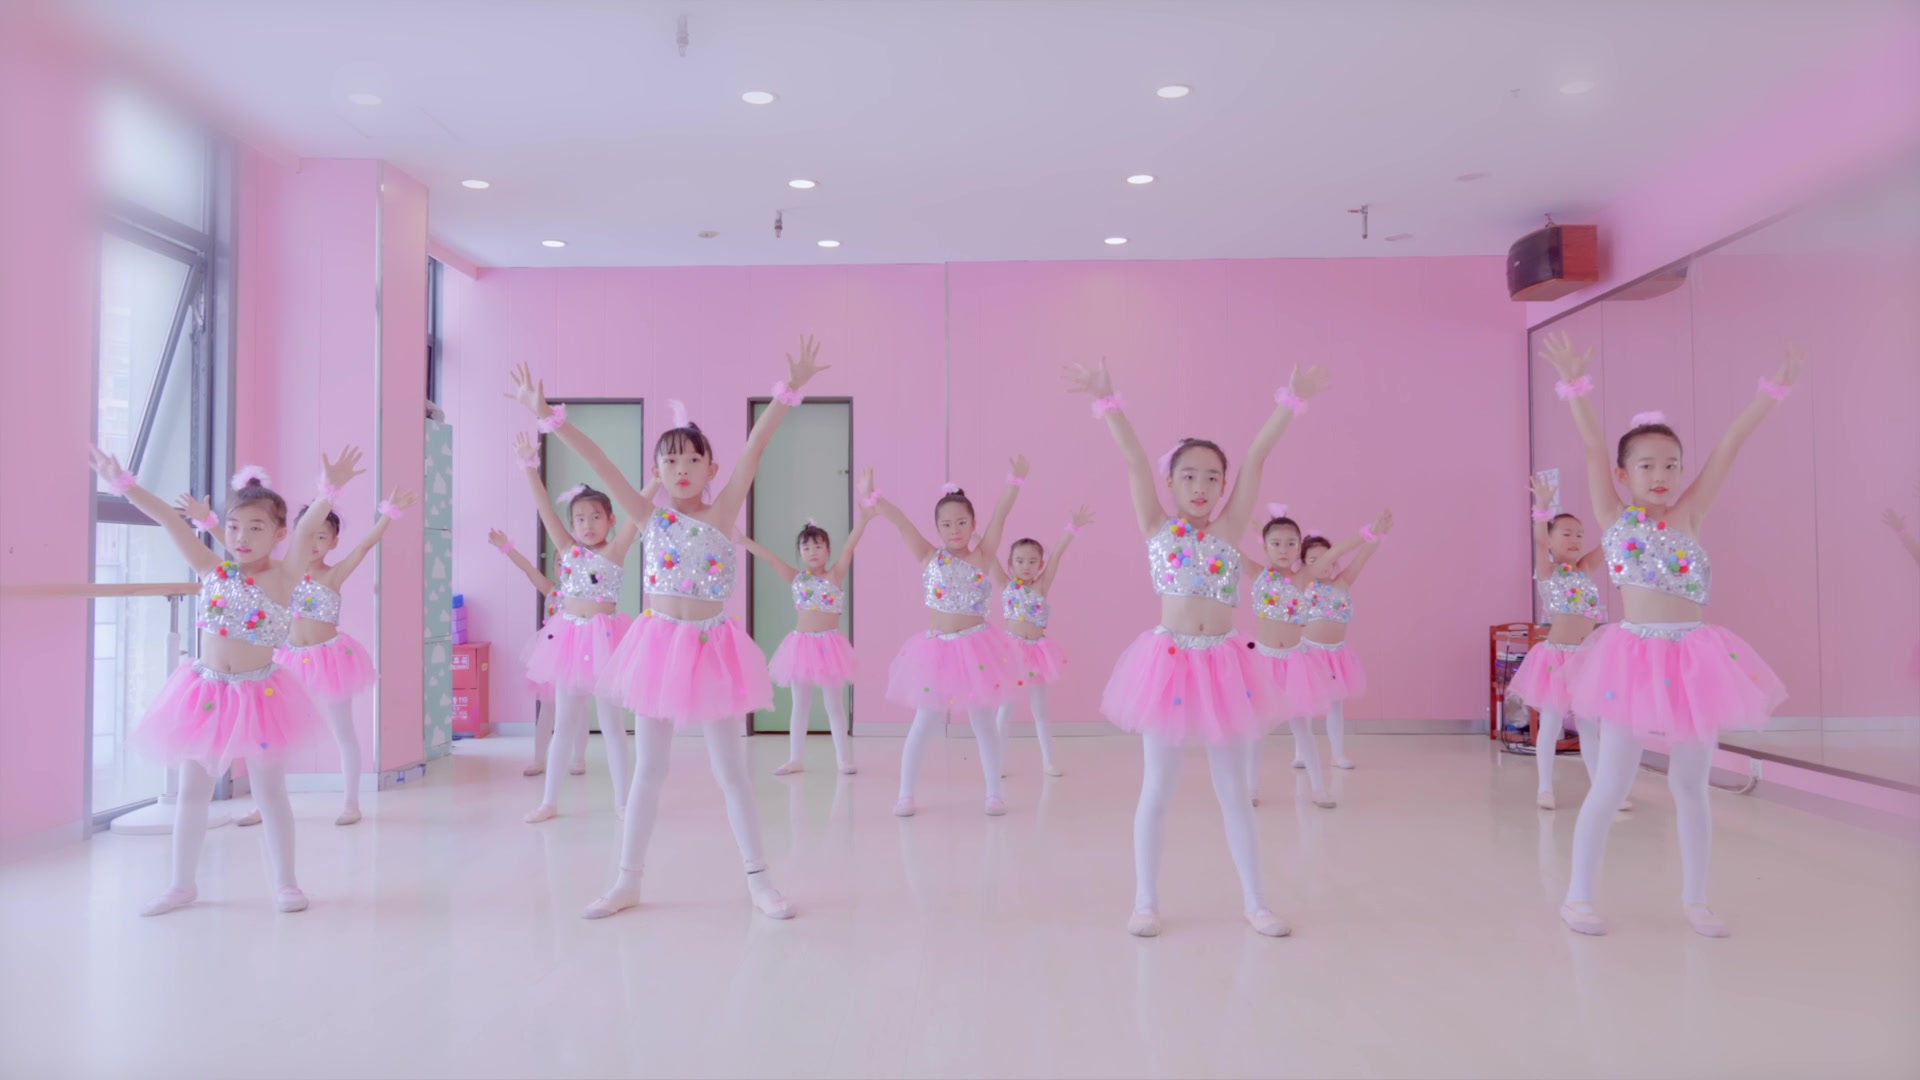 【单色舞蹈】少儿中国舞基本功技巧展示_哔哩哔哩_bilibili